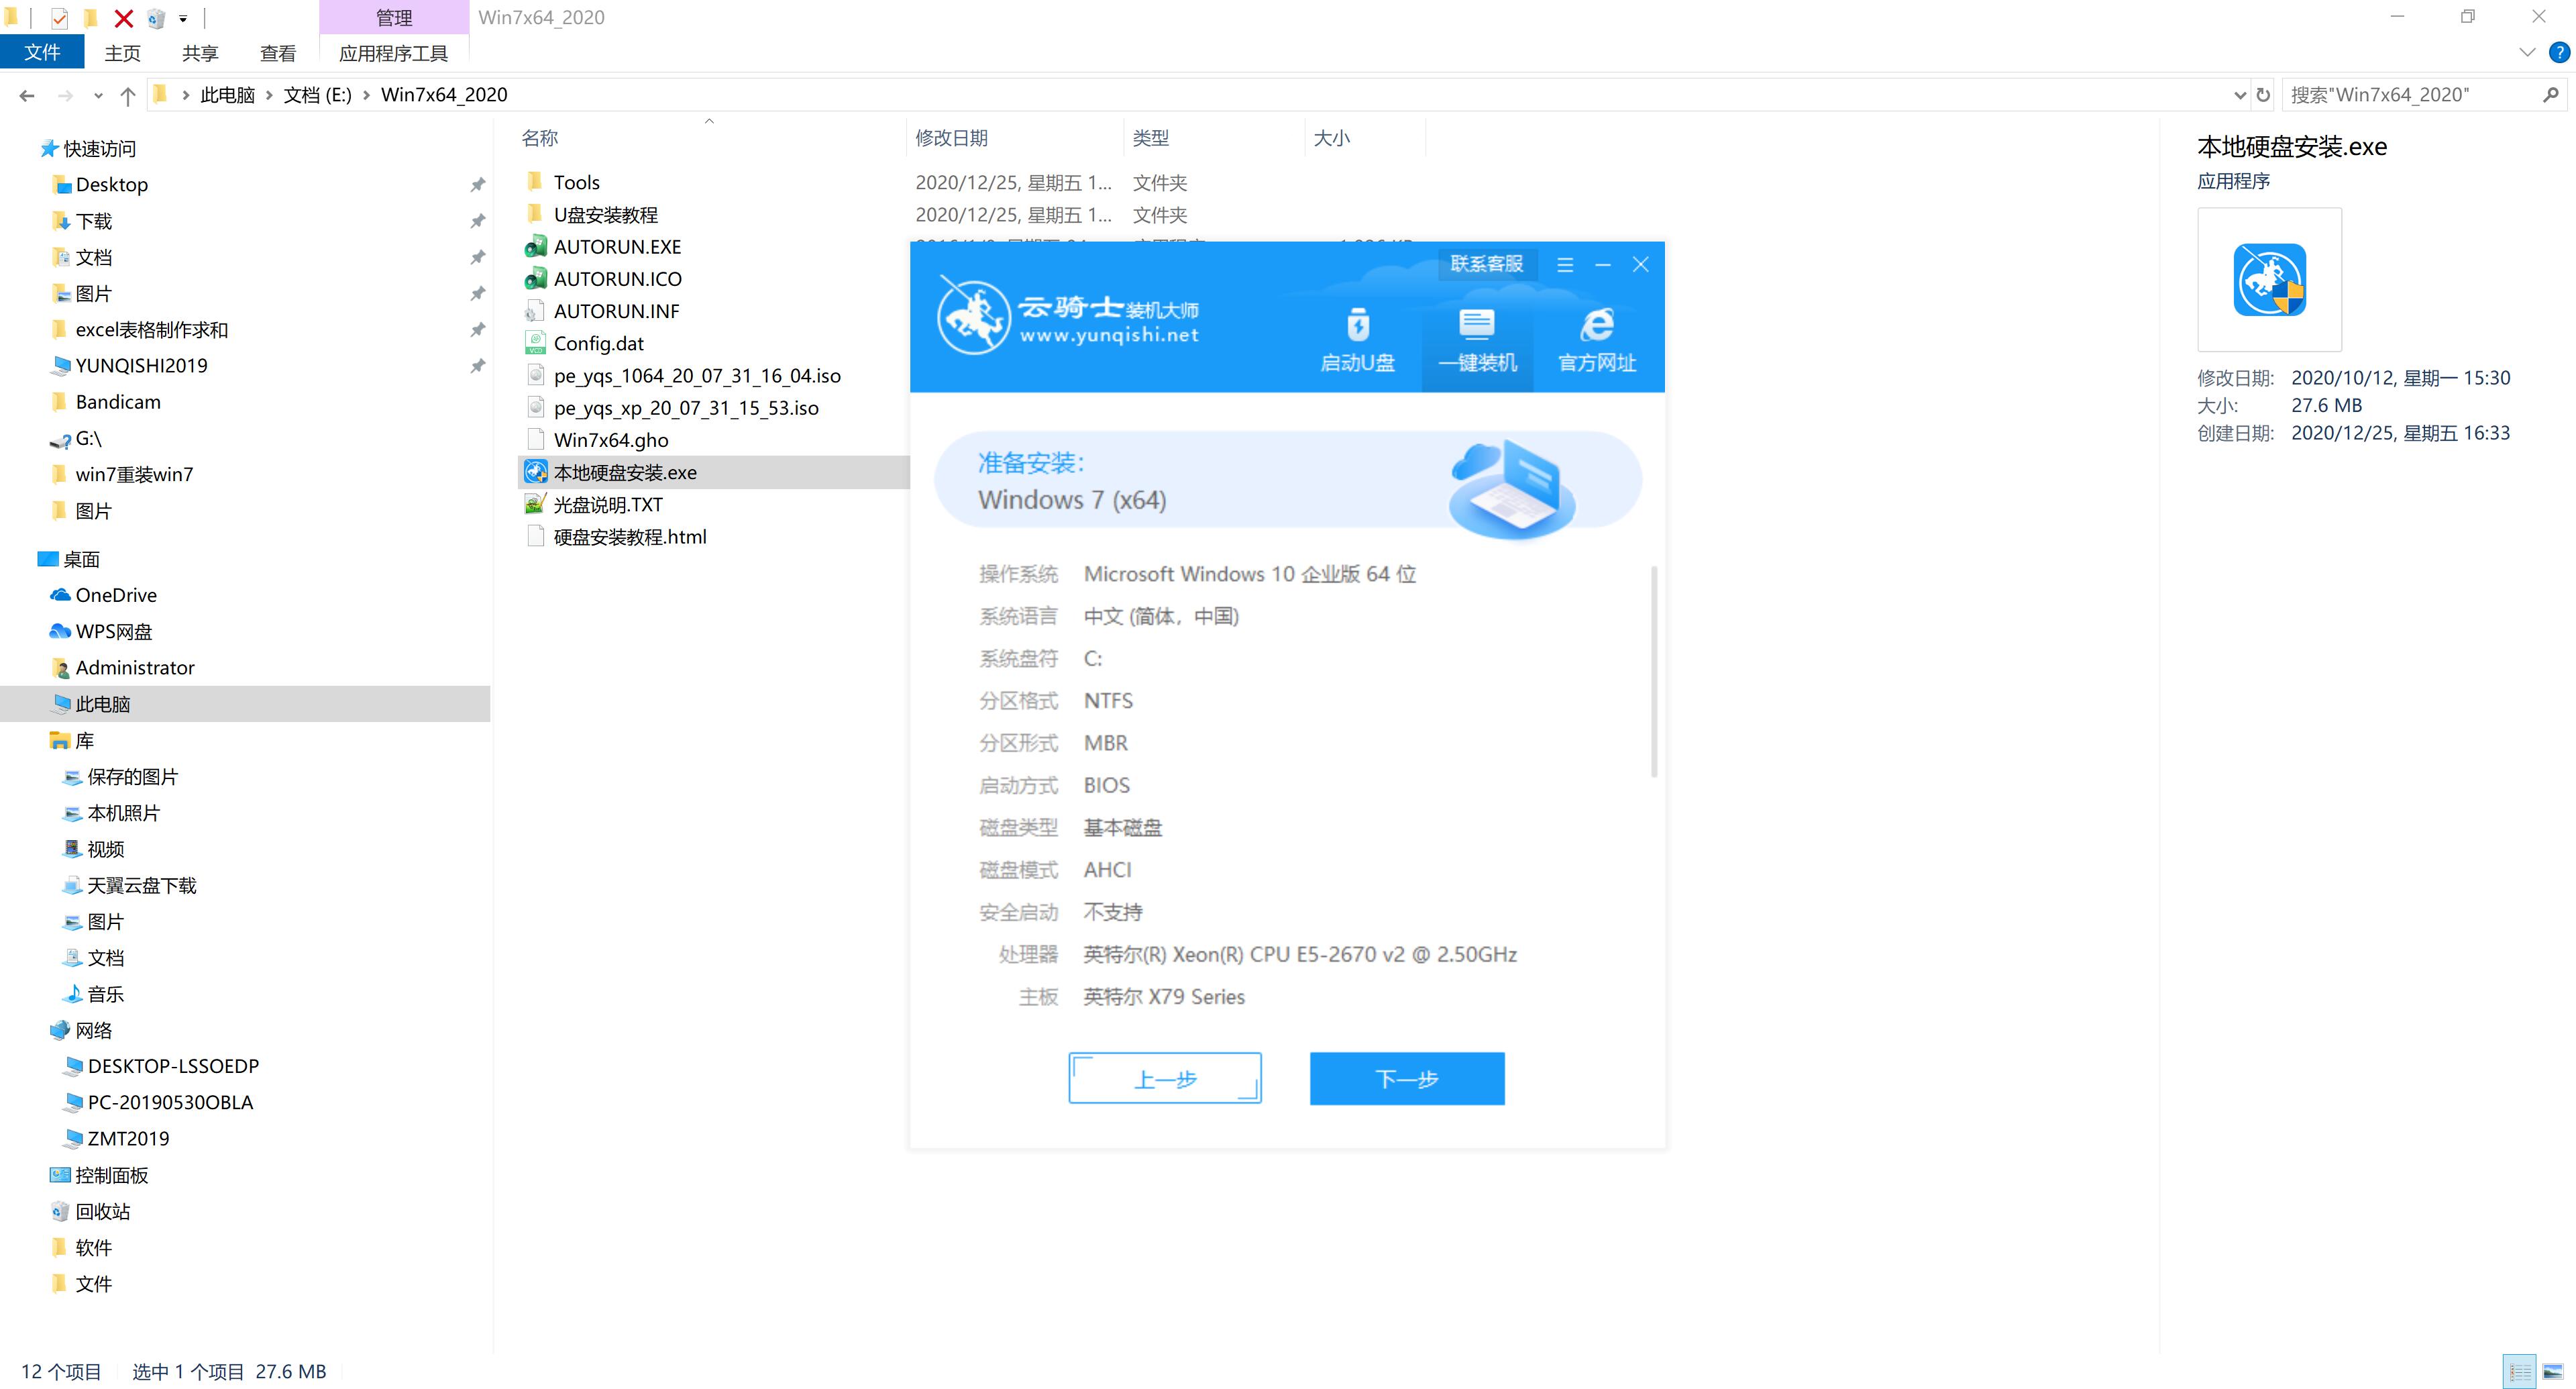 新版苹果笔记本专用系统 GHOST Win7 X64 SP1 旗舰版镜像免费下载 V2021.02(4)